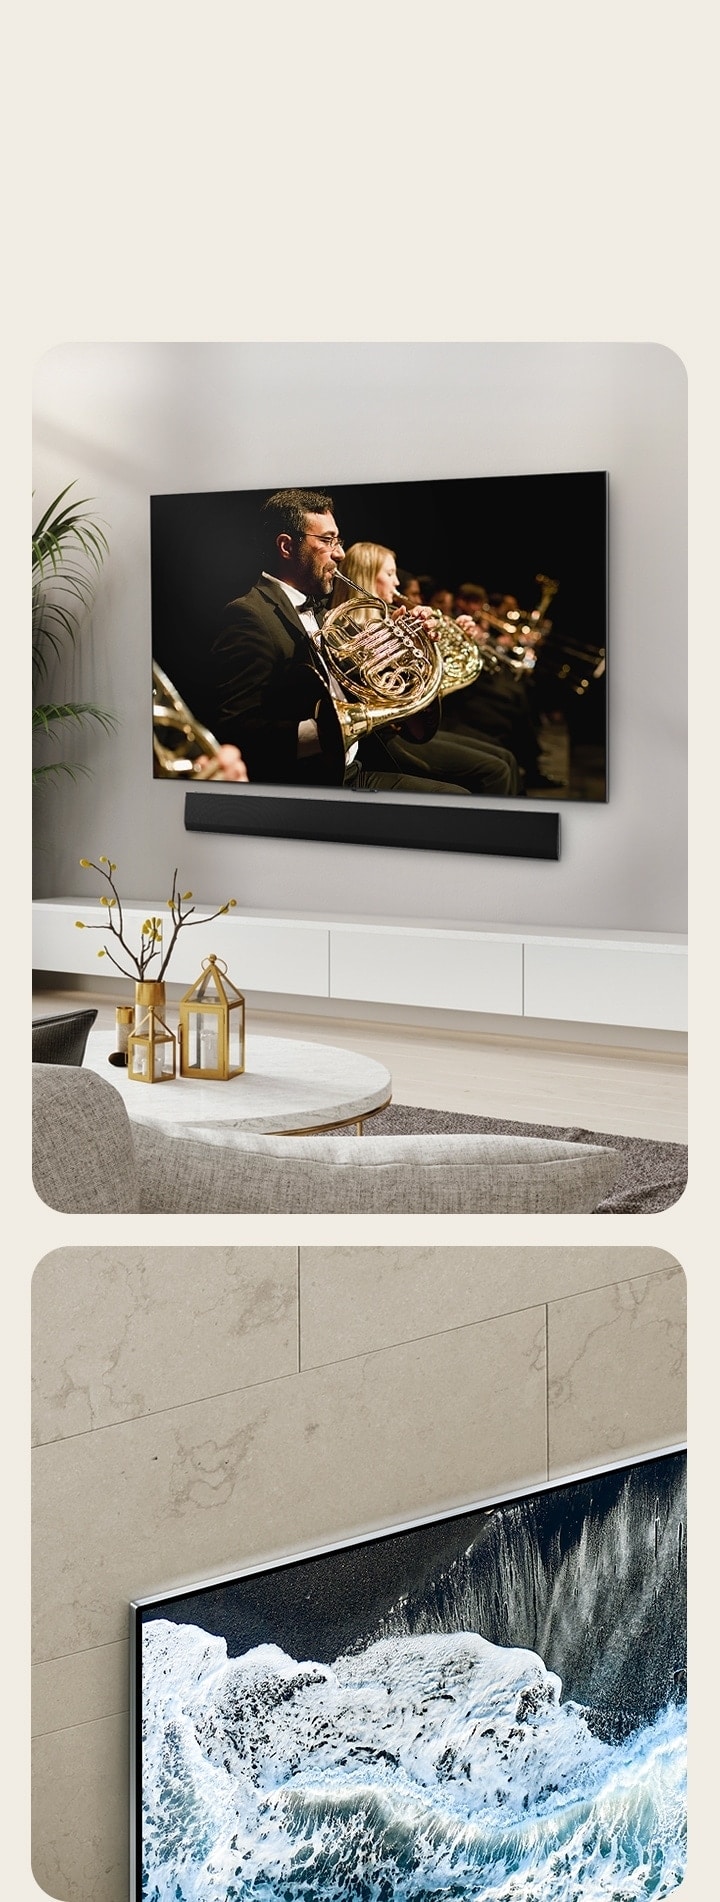 Le TV OLED LG, OLED G4 avec une perspective en angle, contre un mur en marbre, montrant comment elle se fond dans le mur.   La TV OLED LG, OLED G4 et la barre de son LG dans un espace de vie, à plat contre le mur avec un orchestre qui joue à l’écran. 